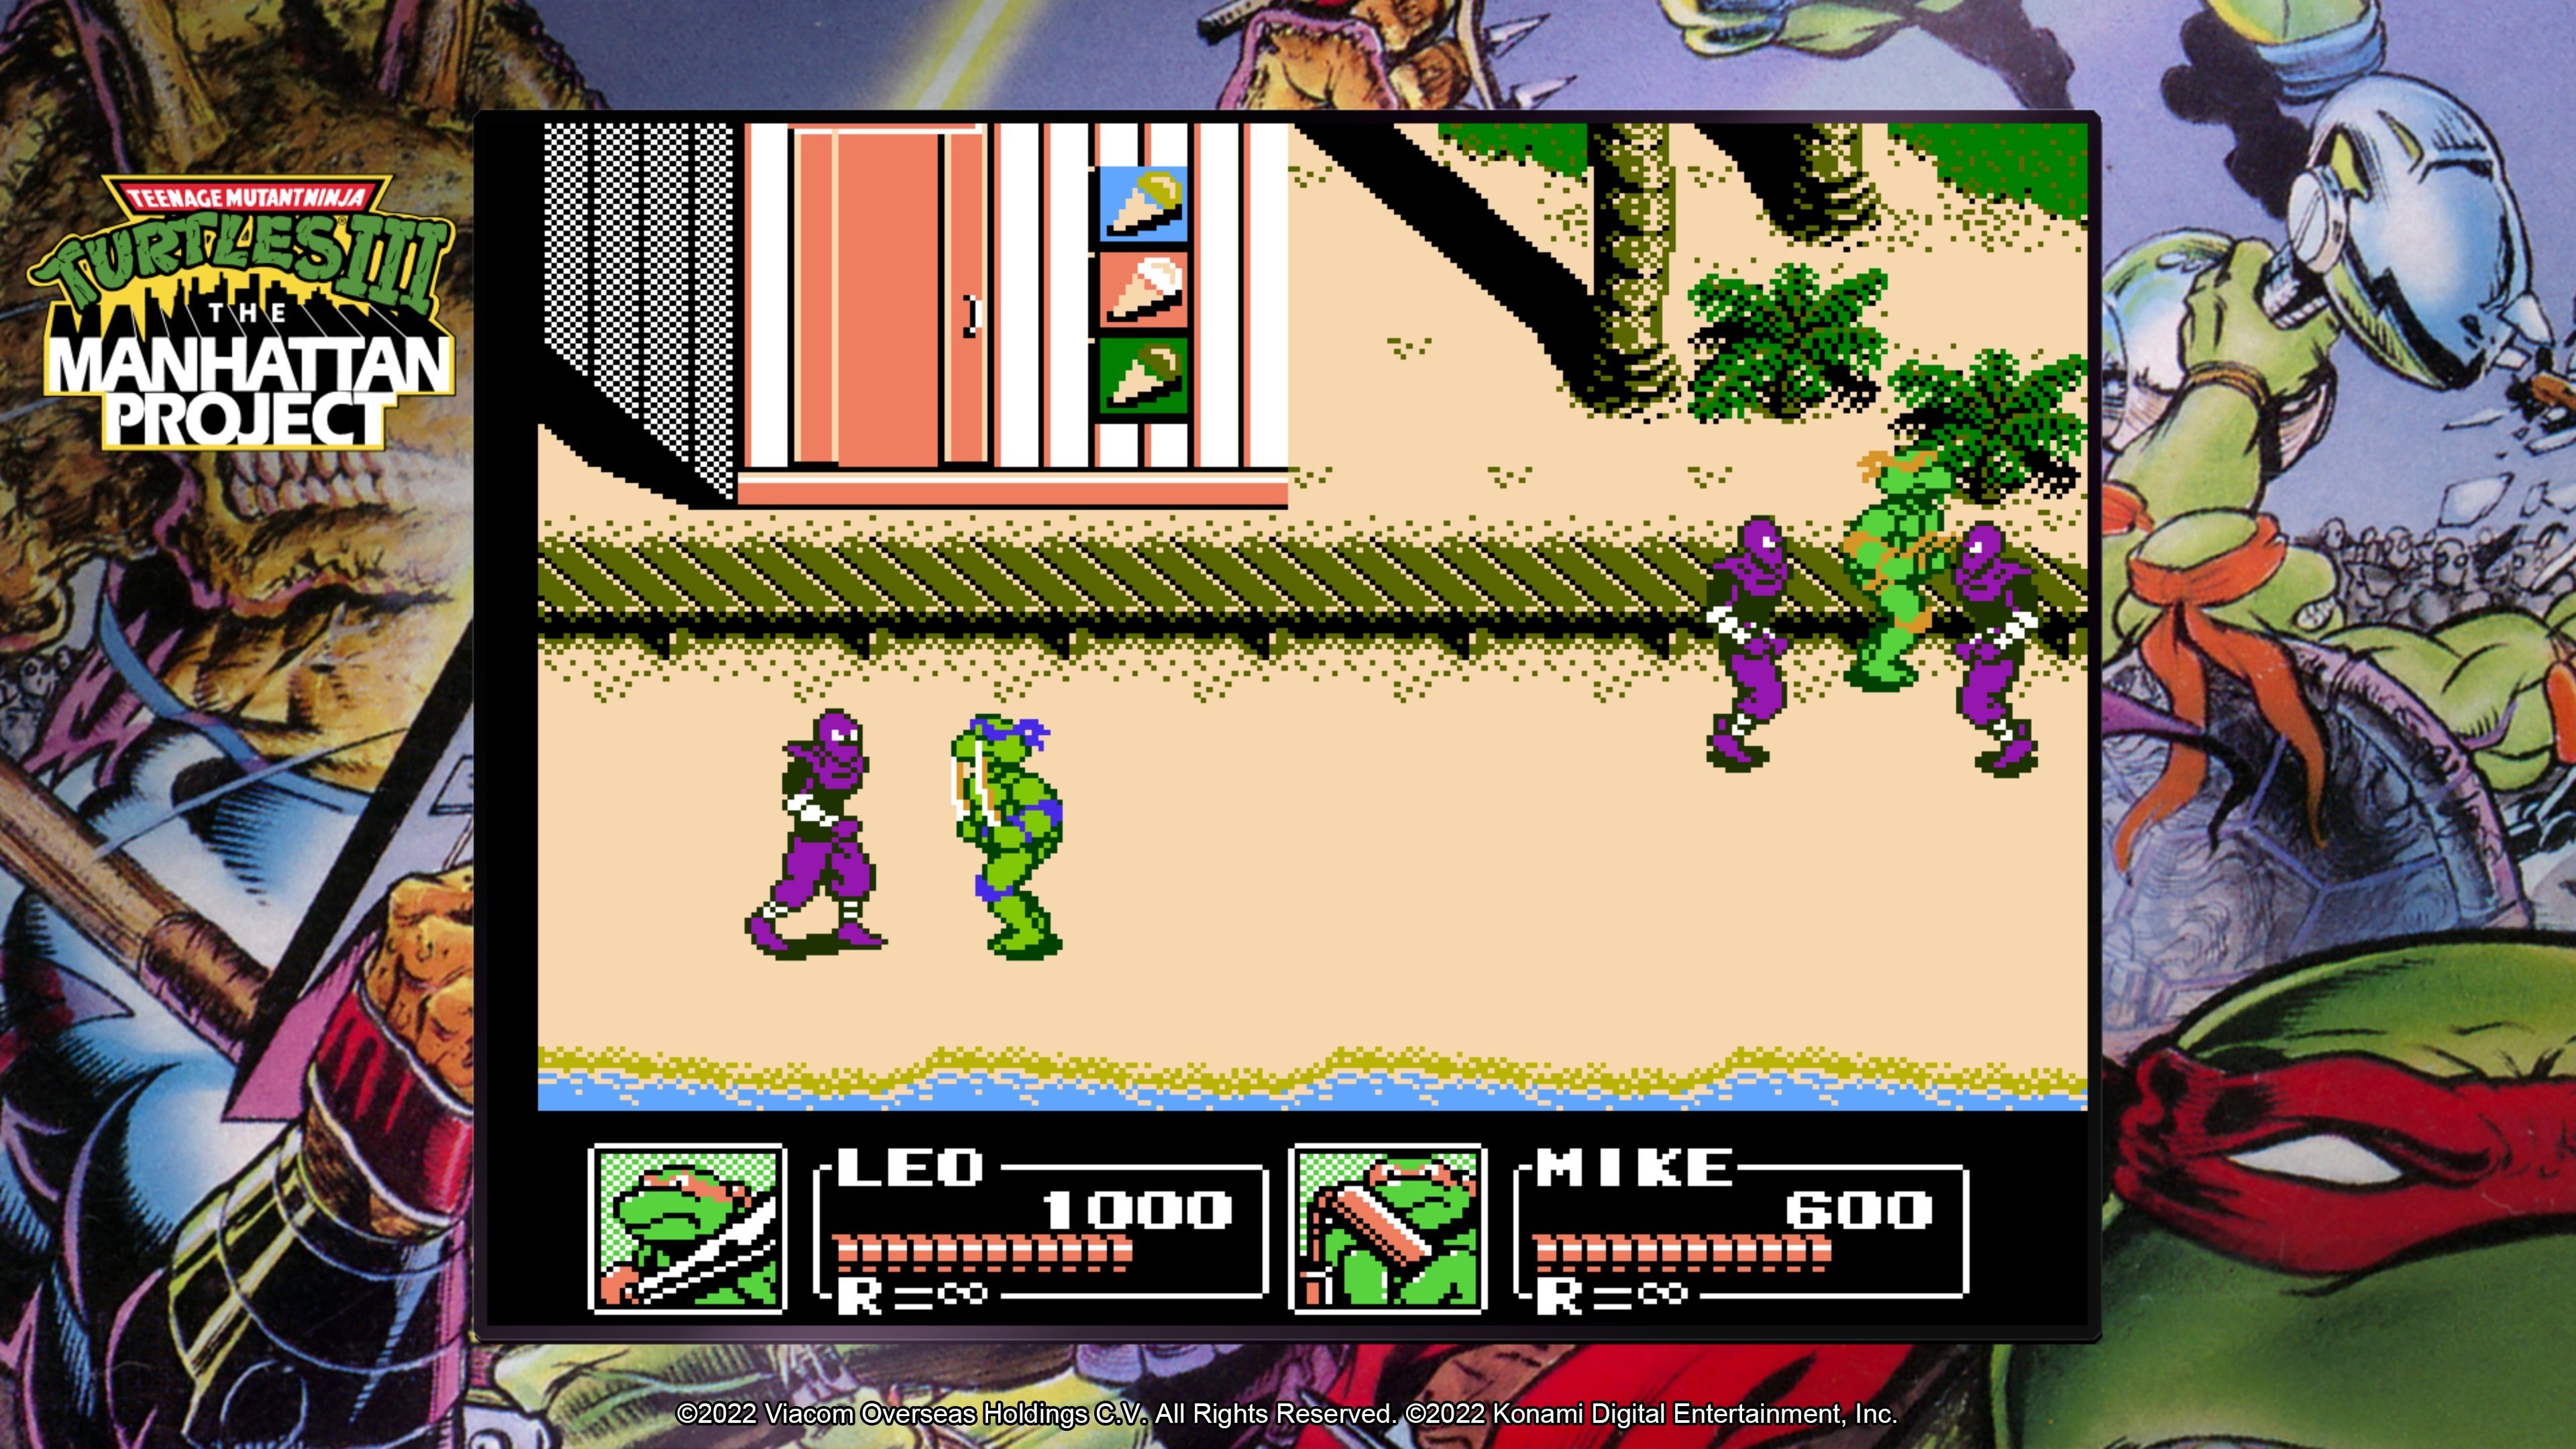 Ninja Cowabunga Teenage The Turtles - PlayStation Konami Mutant Collection 5